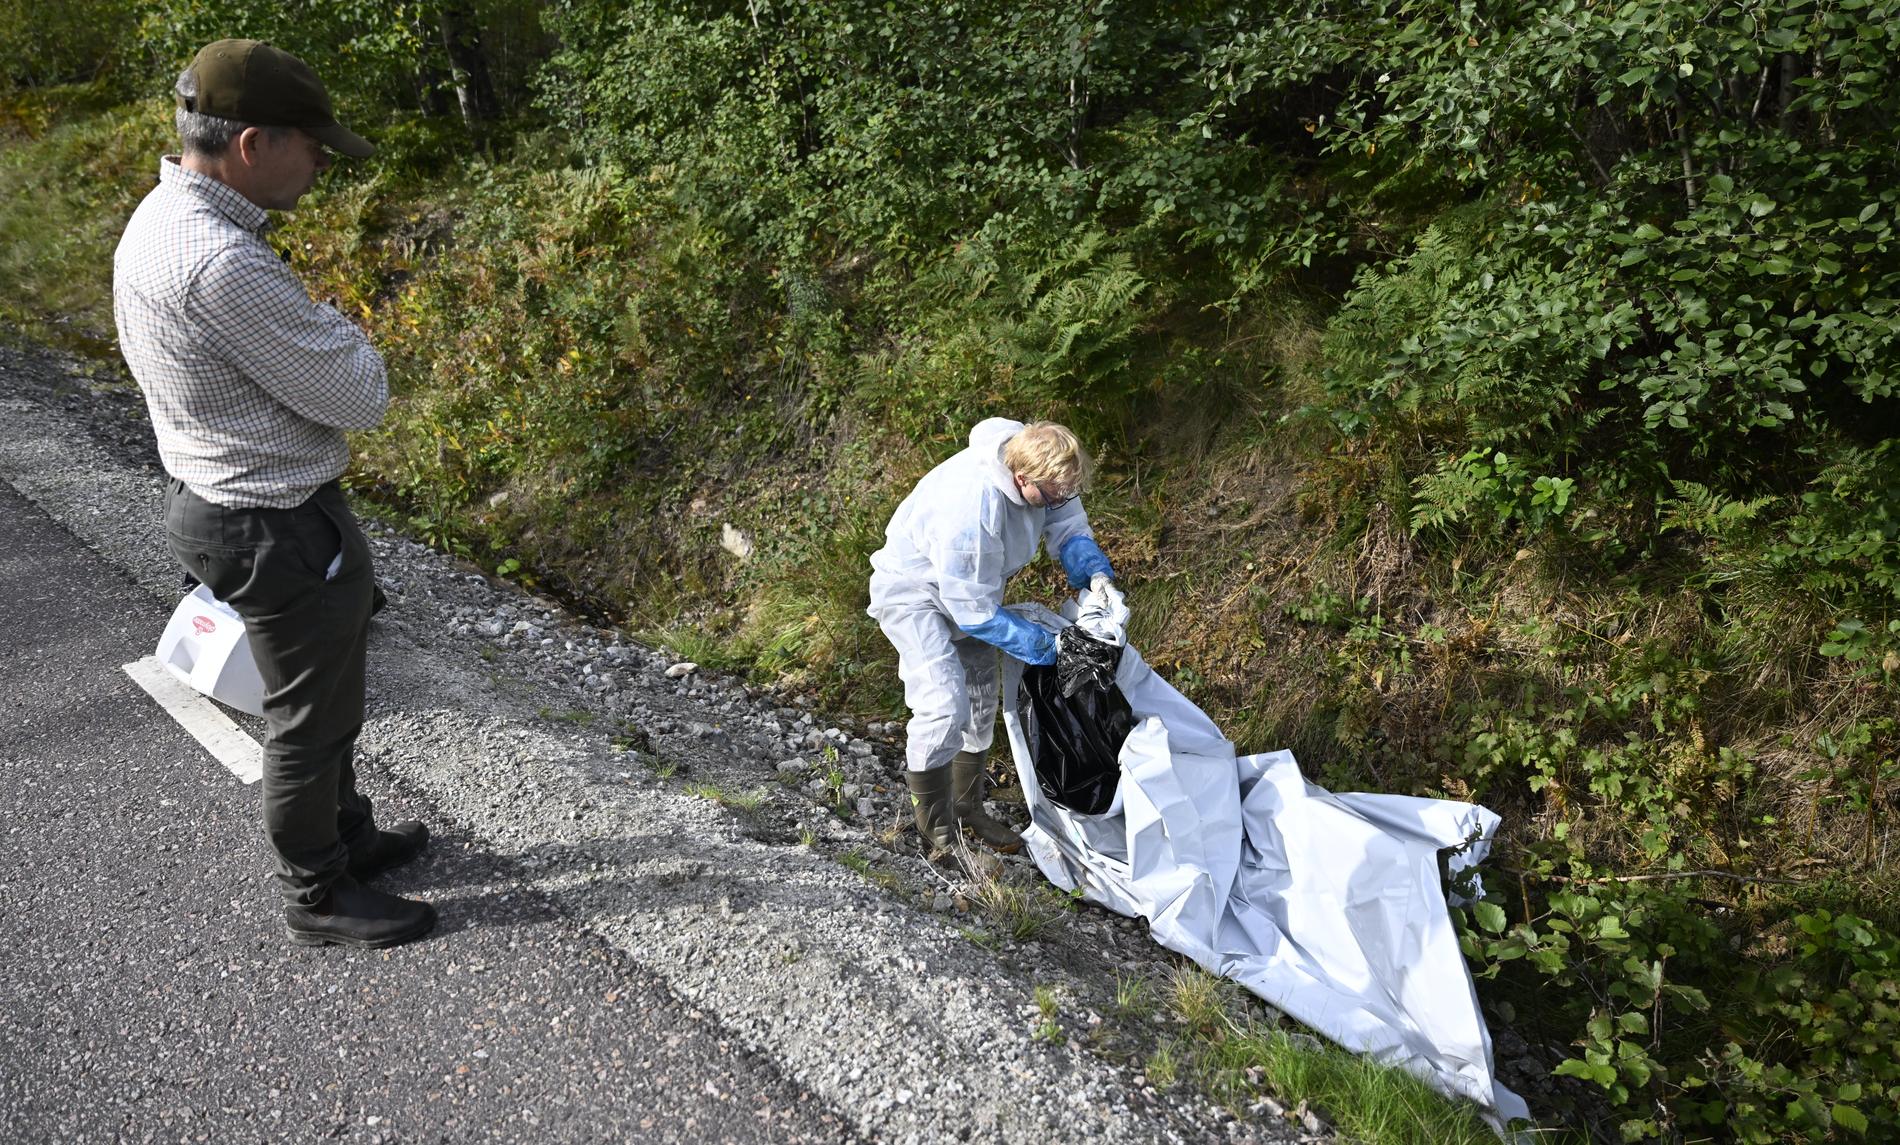 Prover tas på ett vildsvinskadaver vid en väg i Västmanland. Bilden är från september.